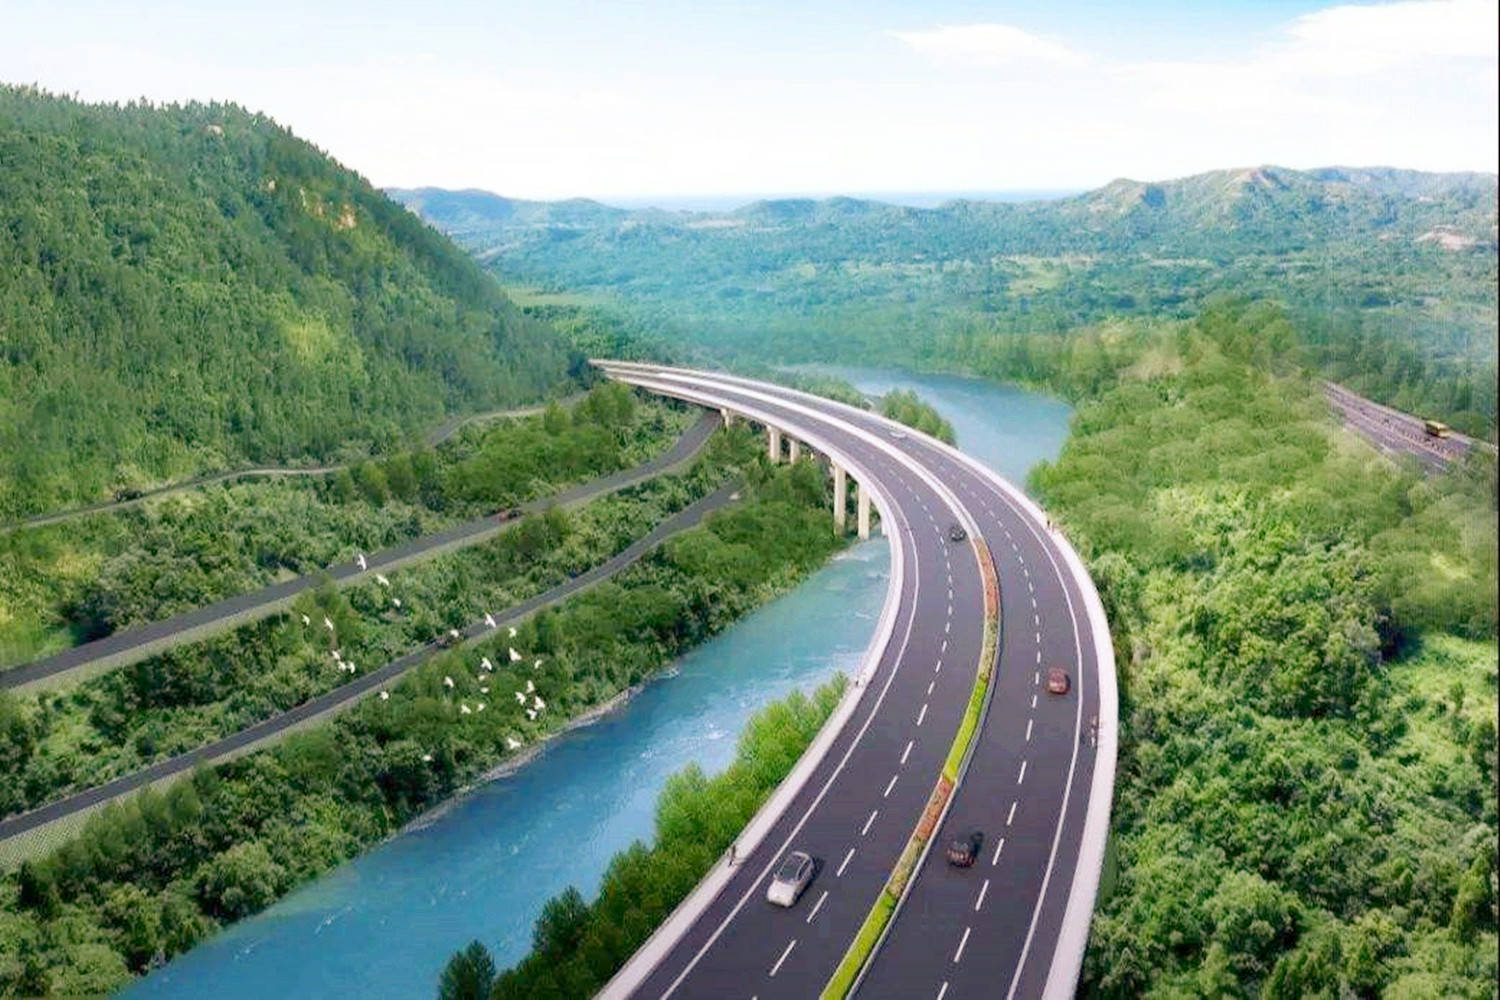 江西在建一条双向四车道高速,全长约75.3公里,预计2021年底建成